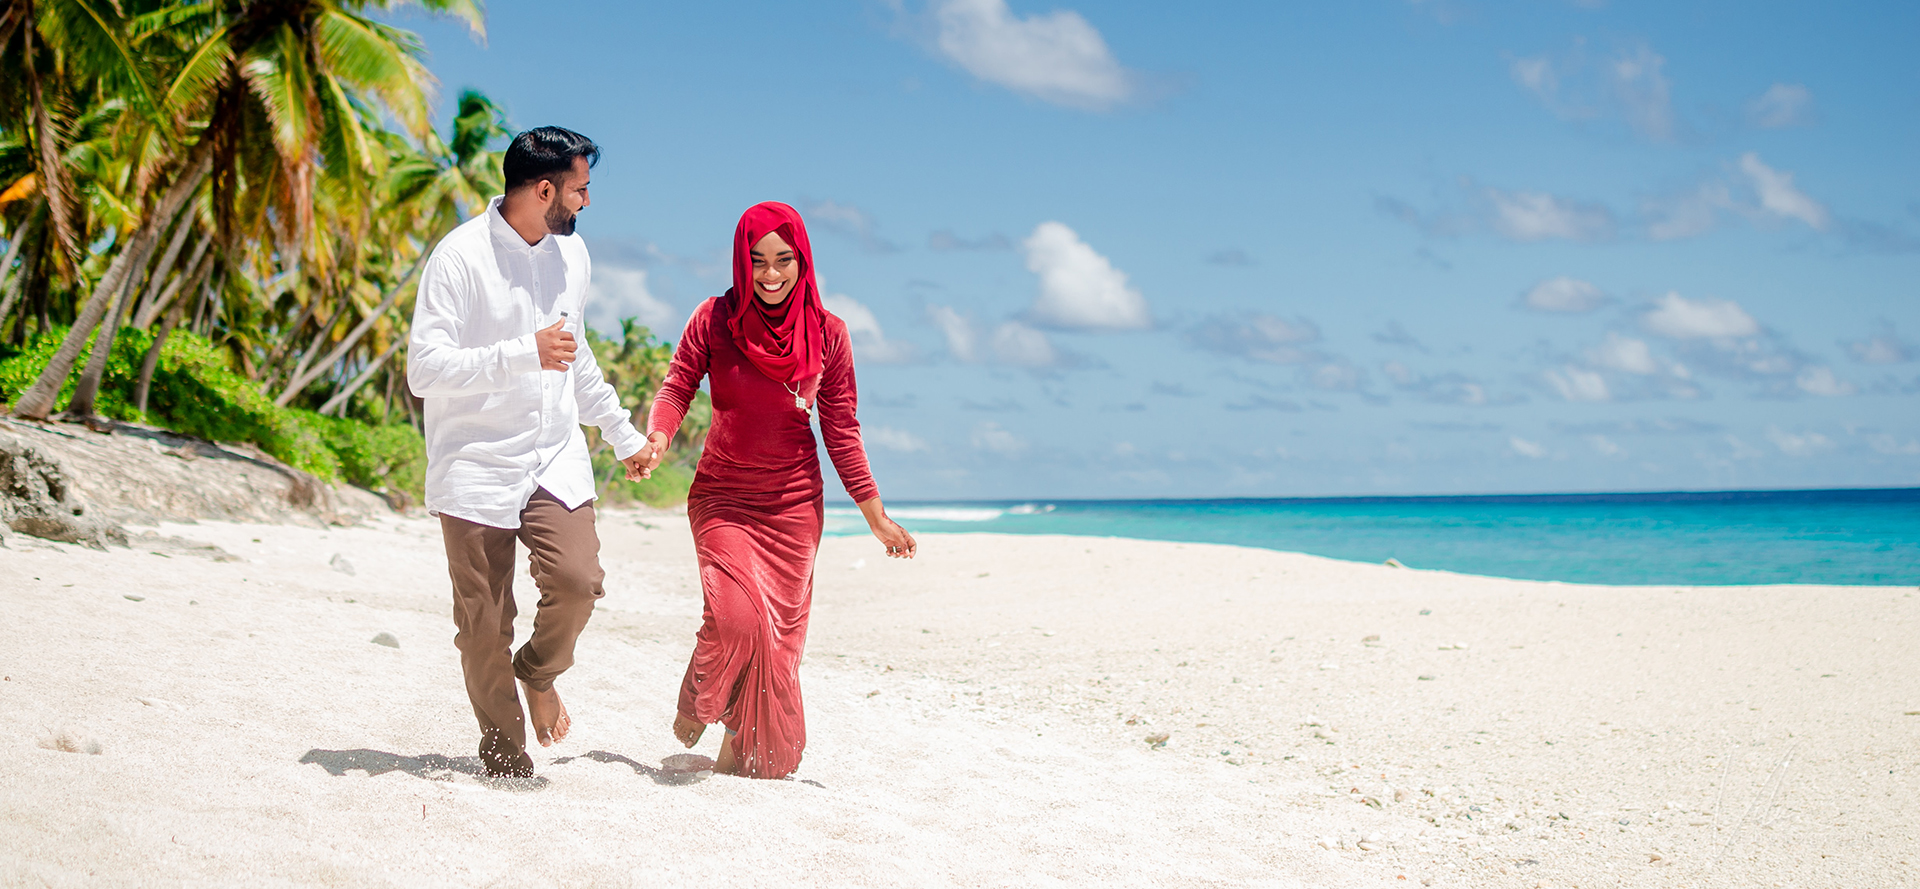 Solteros árabes en una cita paseando por la playa.